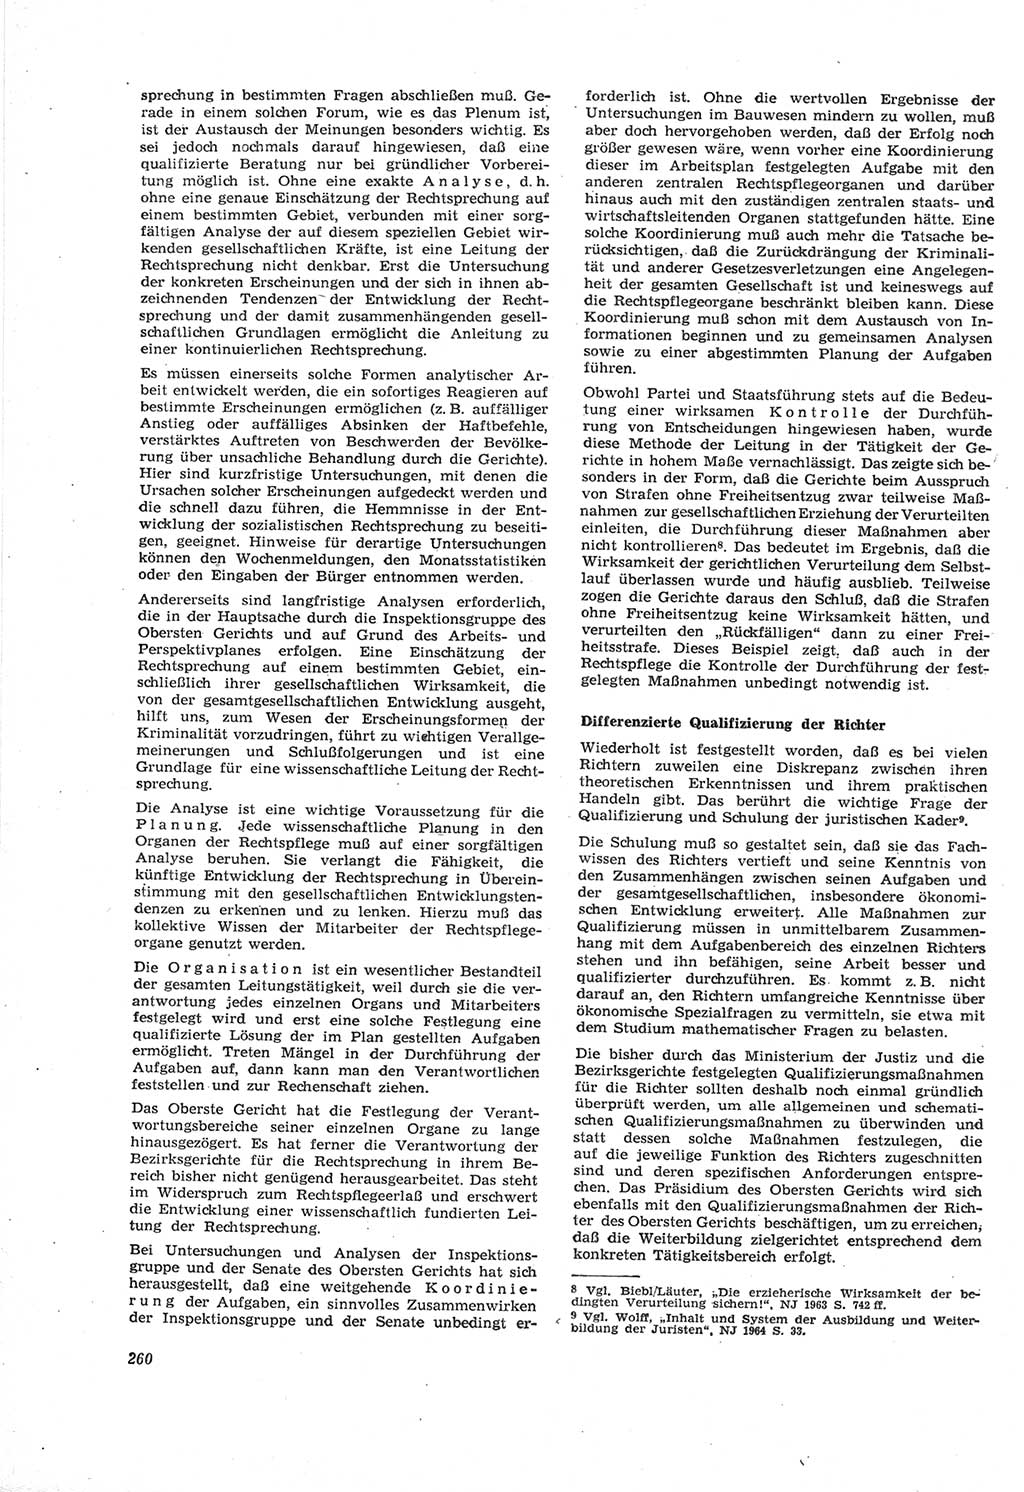 Neue Justiz (NJ), Zeitschrift für Recht und Rechtswissenschaft [Deutsche Demokratische Republik (DDR)], 18. Jahrgang 1964, Seite 260 (NJ DDR 1964, S. 260)